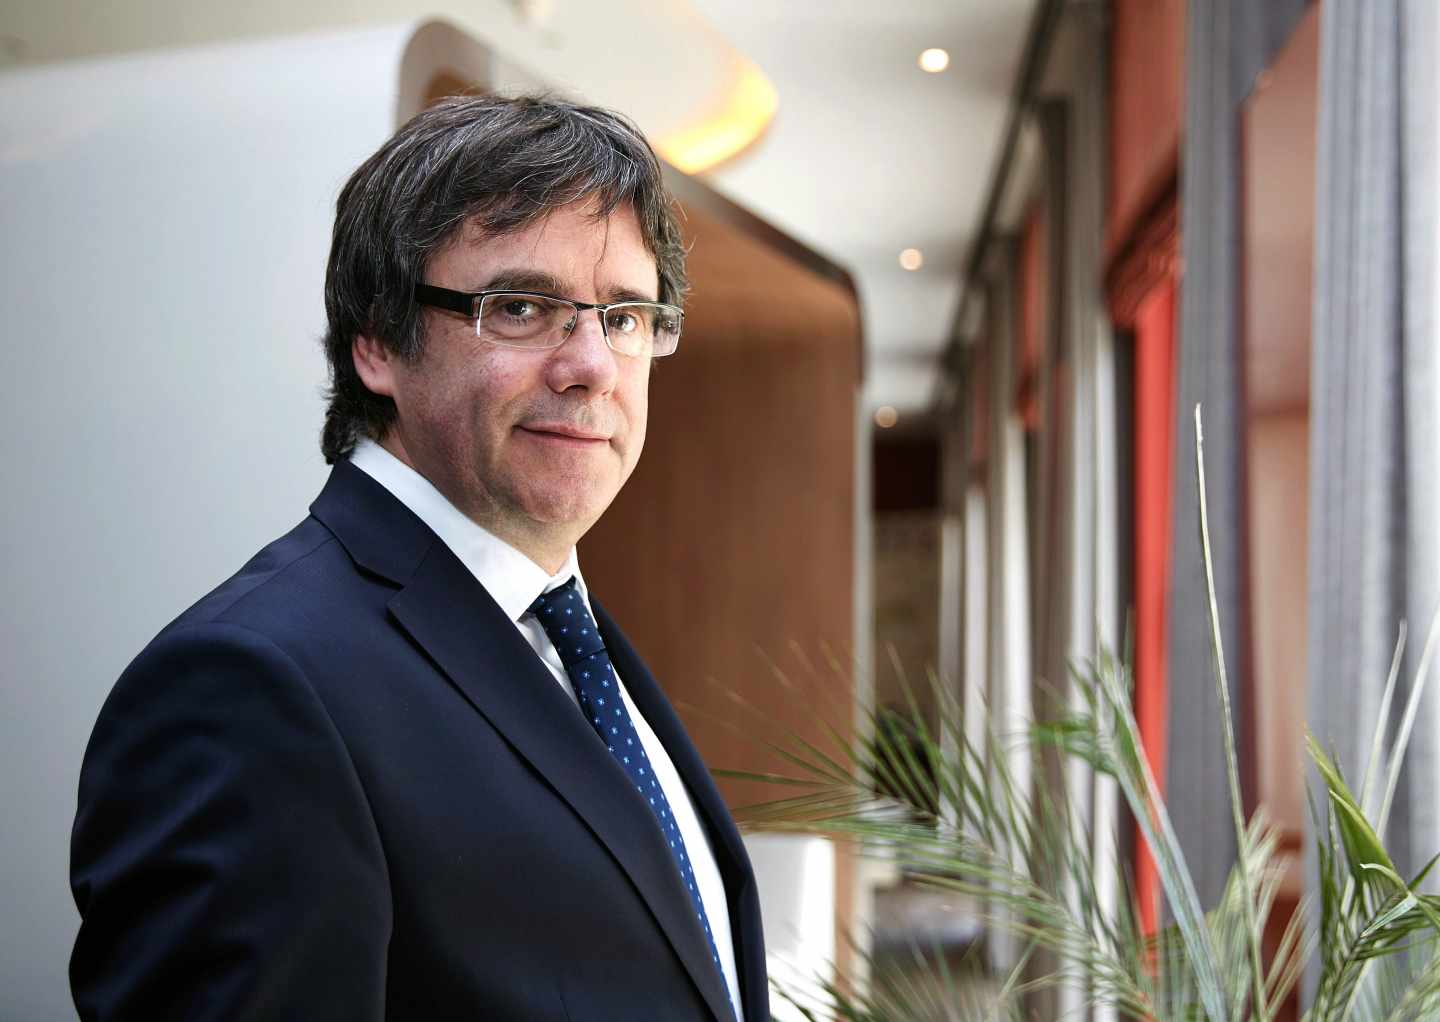 El juez Llarena rechazará la entrega de Puigdemont por malversación